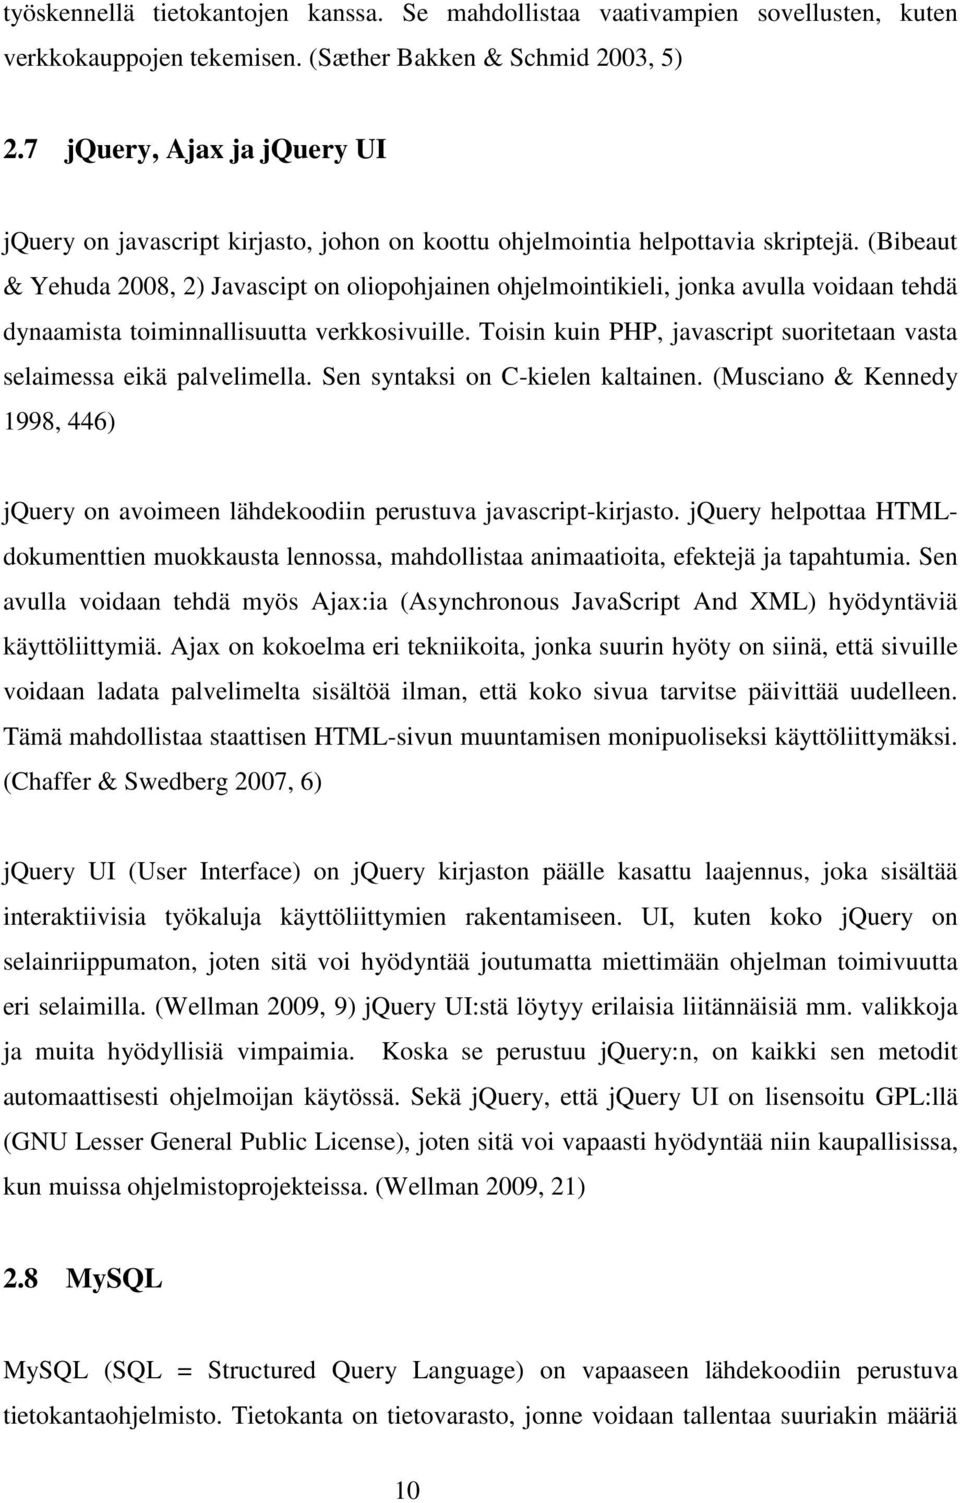 (Bibeaut & Yehuda 2008, 2) Javascipt on oliopohjainen ohjelmointikieli, jonka avulla voidaan tehdä dynaamista toiminnallisuutta verkkosivuille.